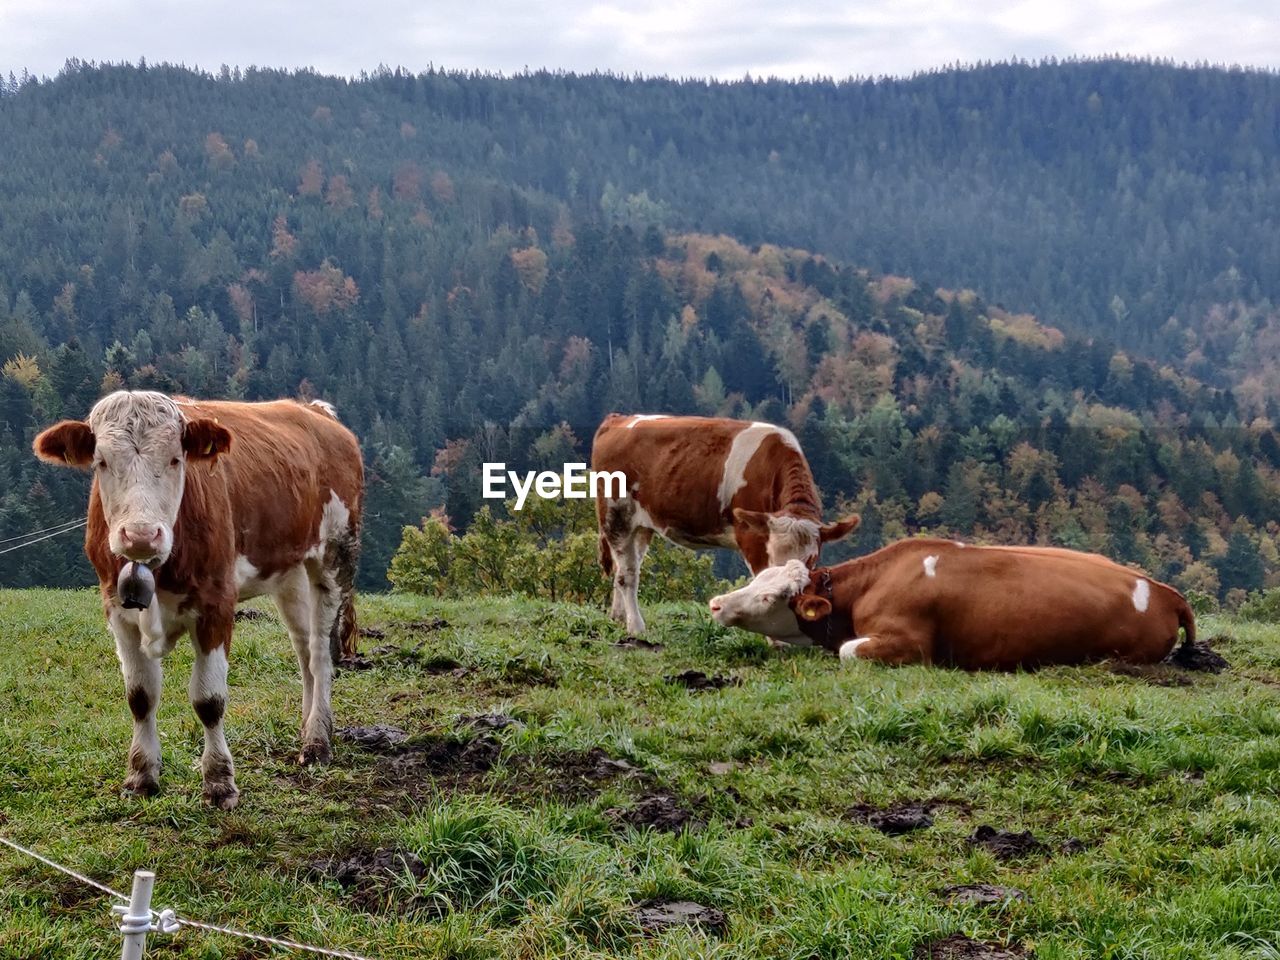 Cows in a field, schwarzwald